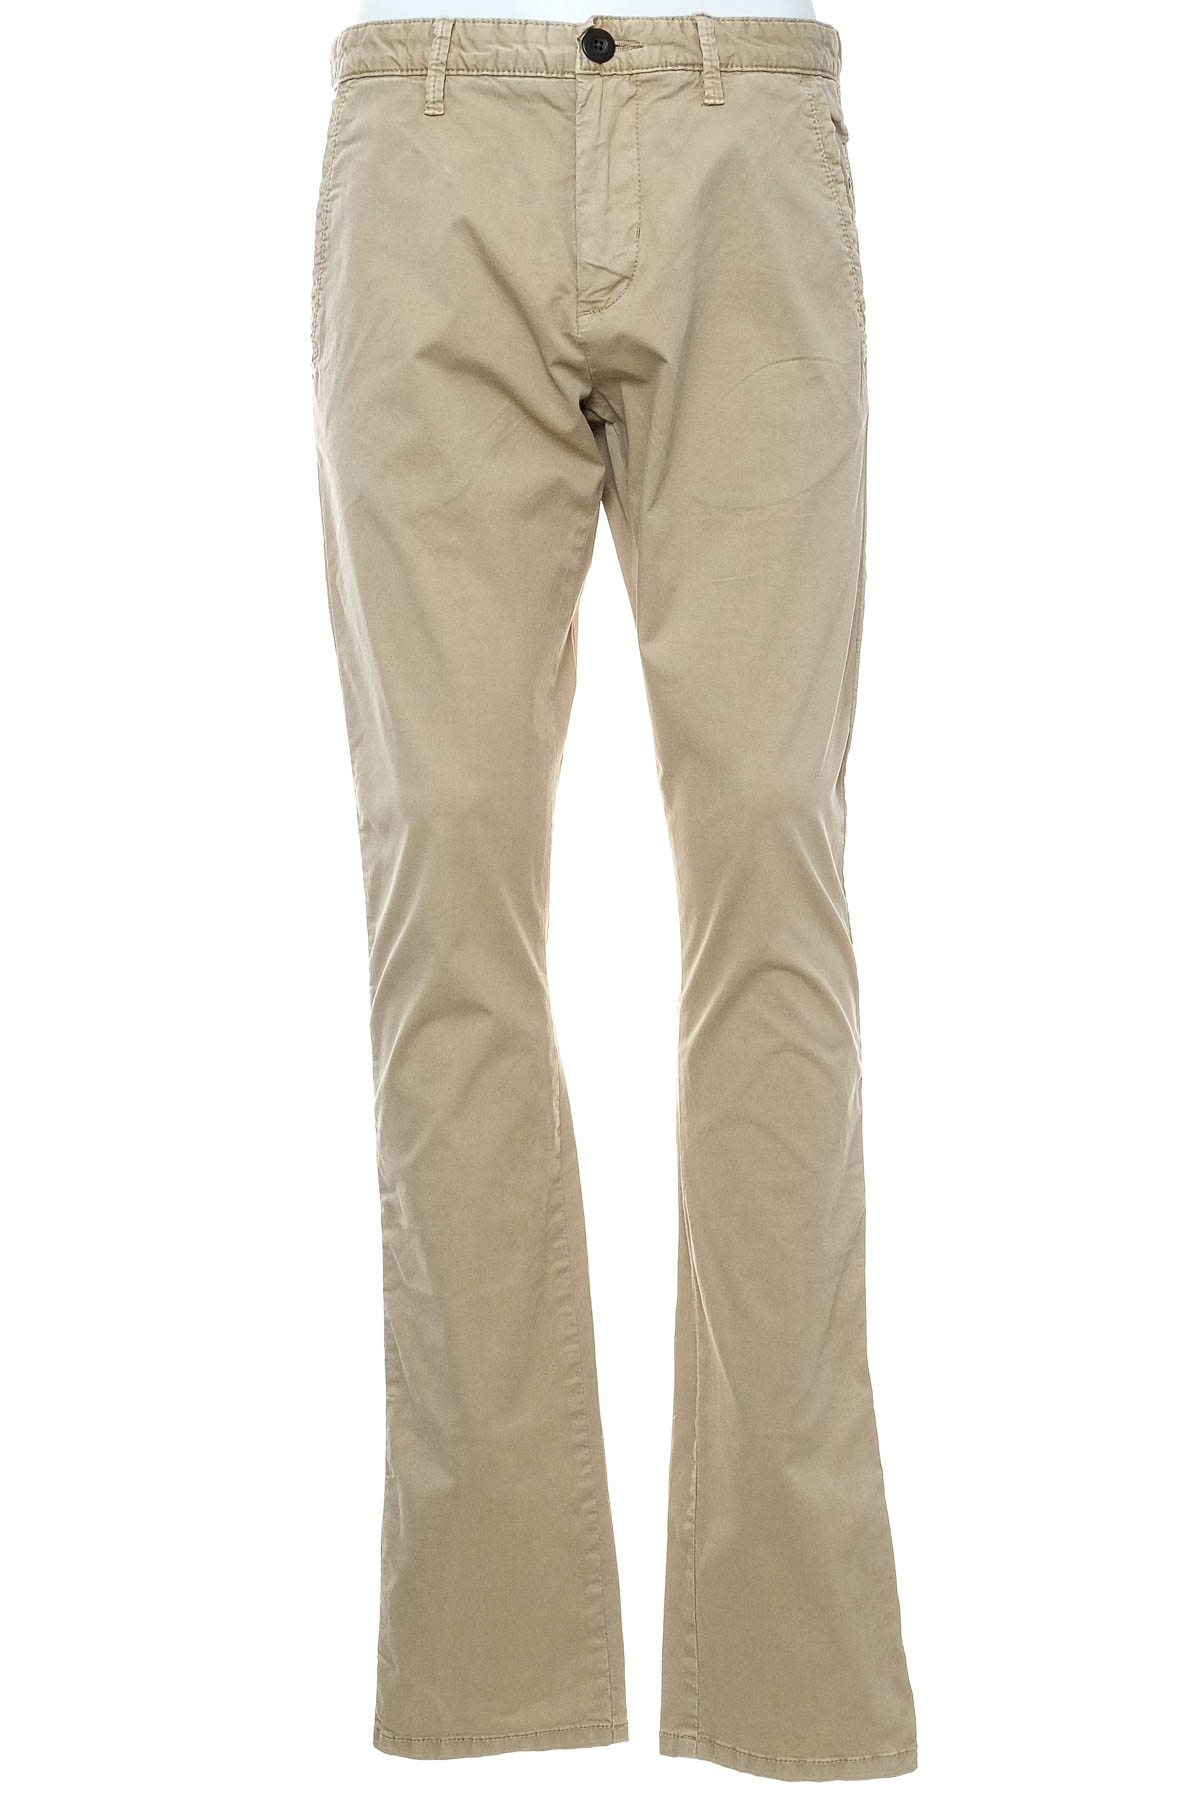 Pantalon pentru bărbați - S.Oliver - 0